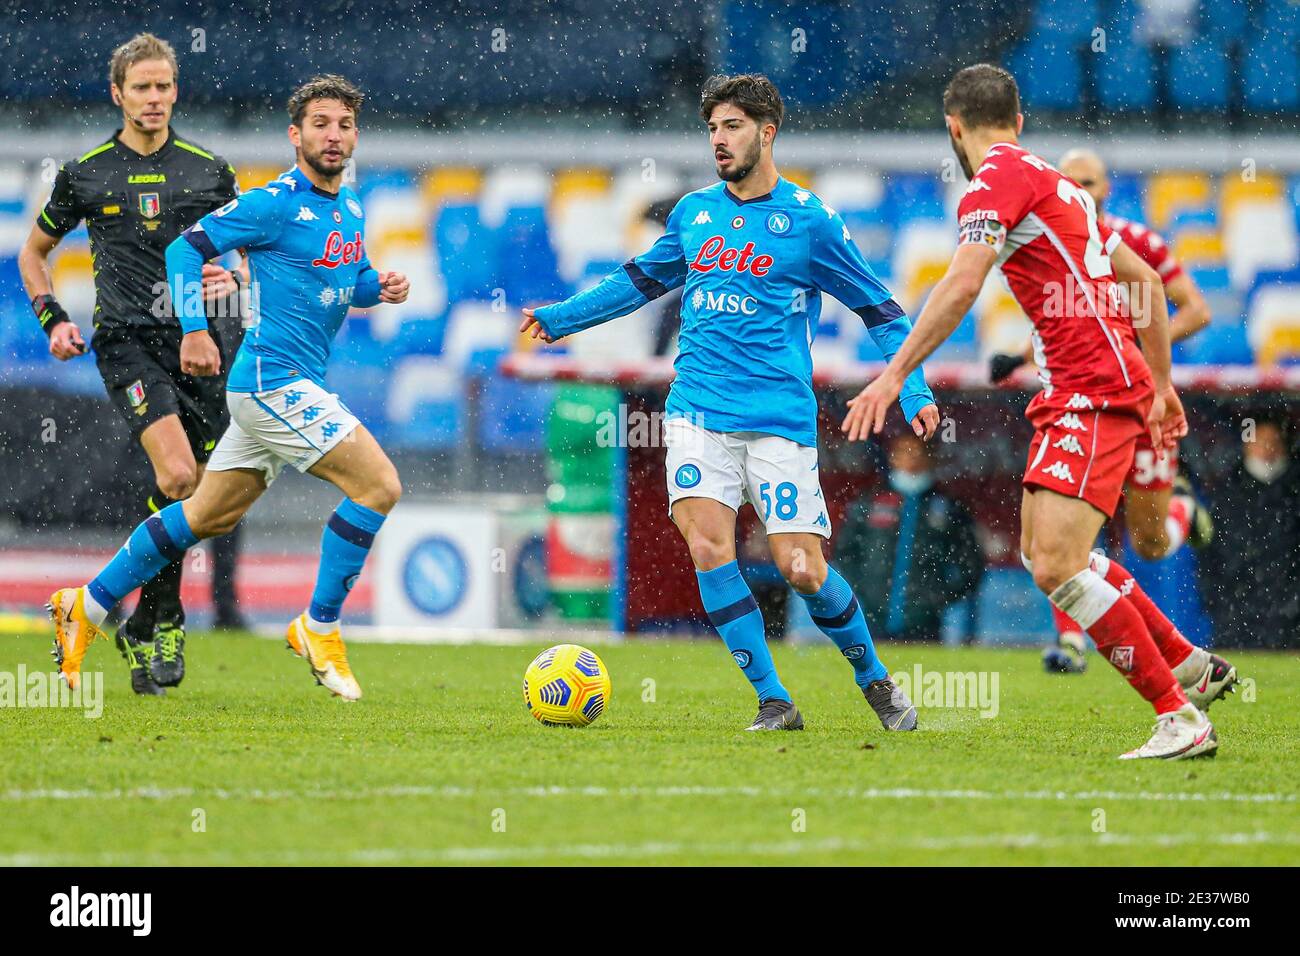 Lo attaccante italiano del SSC Napoli Antonio Cioffi controlla il pallone durante la partita di calcio della serie A SSC Napoli contro ACF Fiorentina. Napoli ha vinto il 6-0 Foto Stock